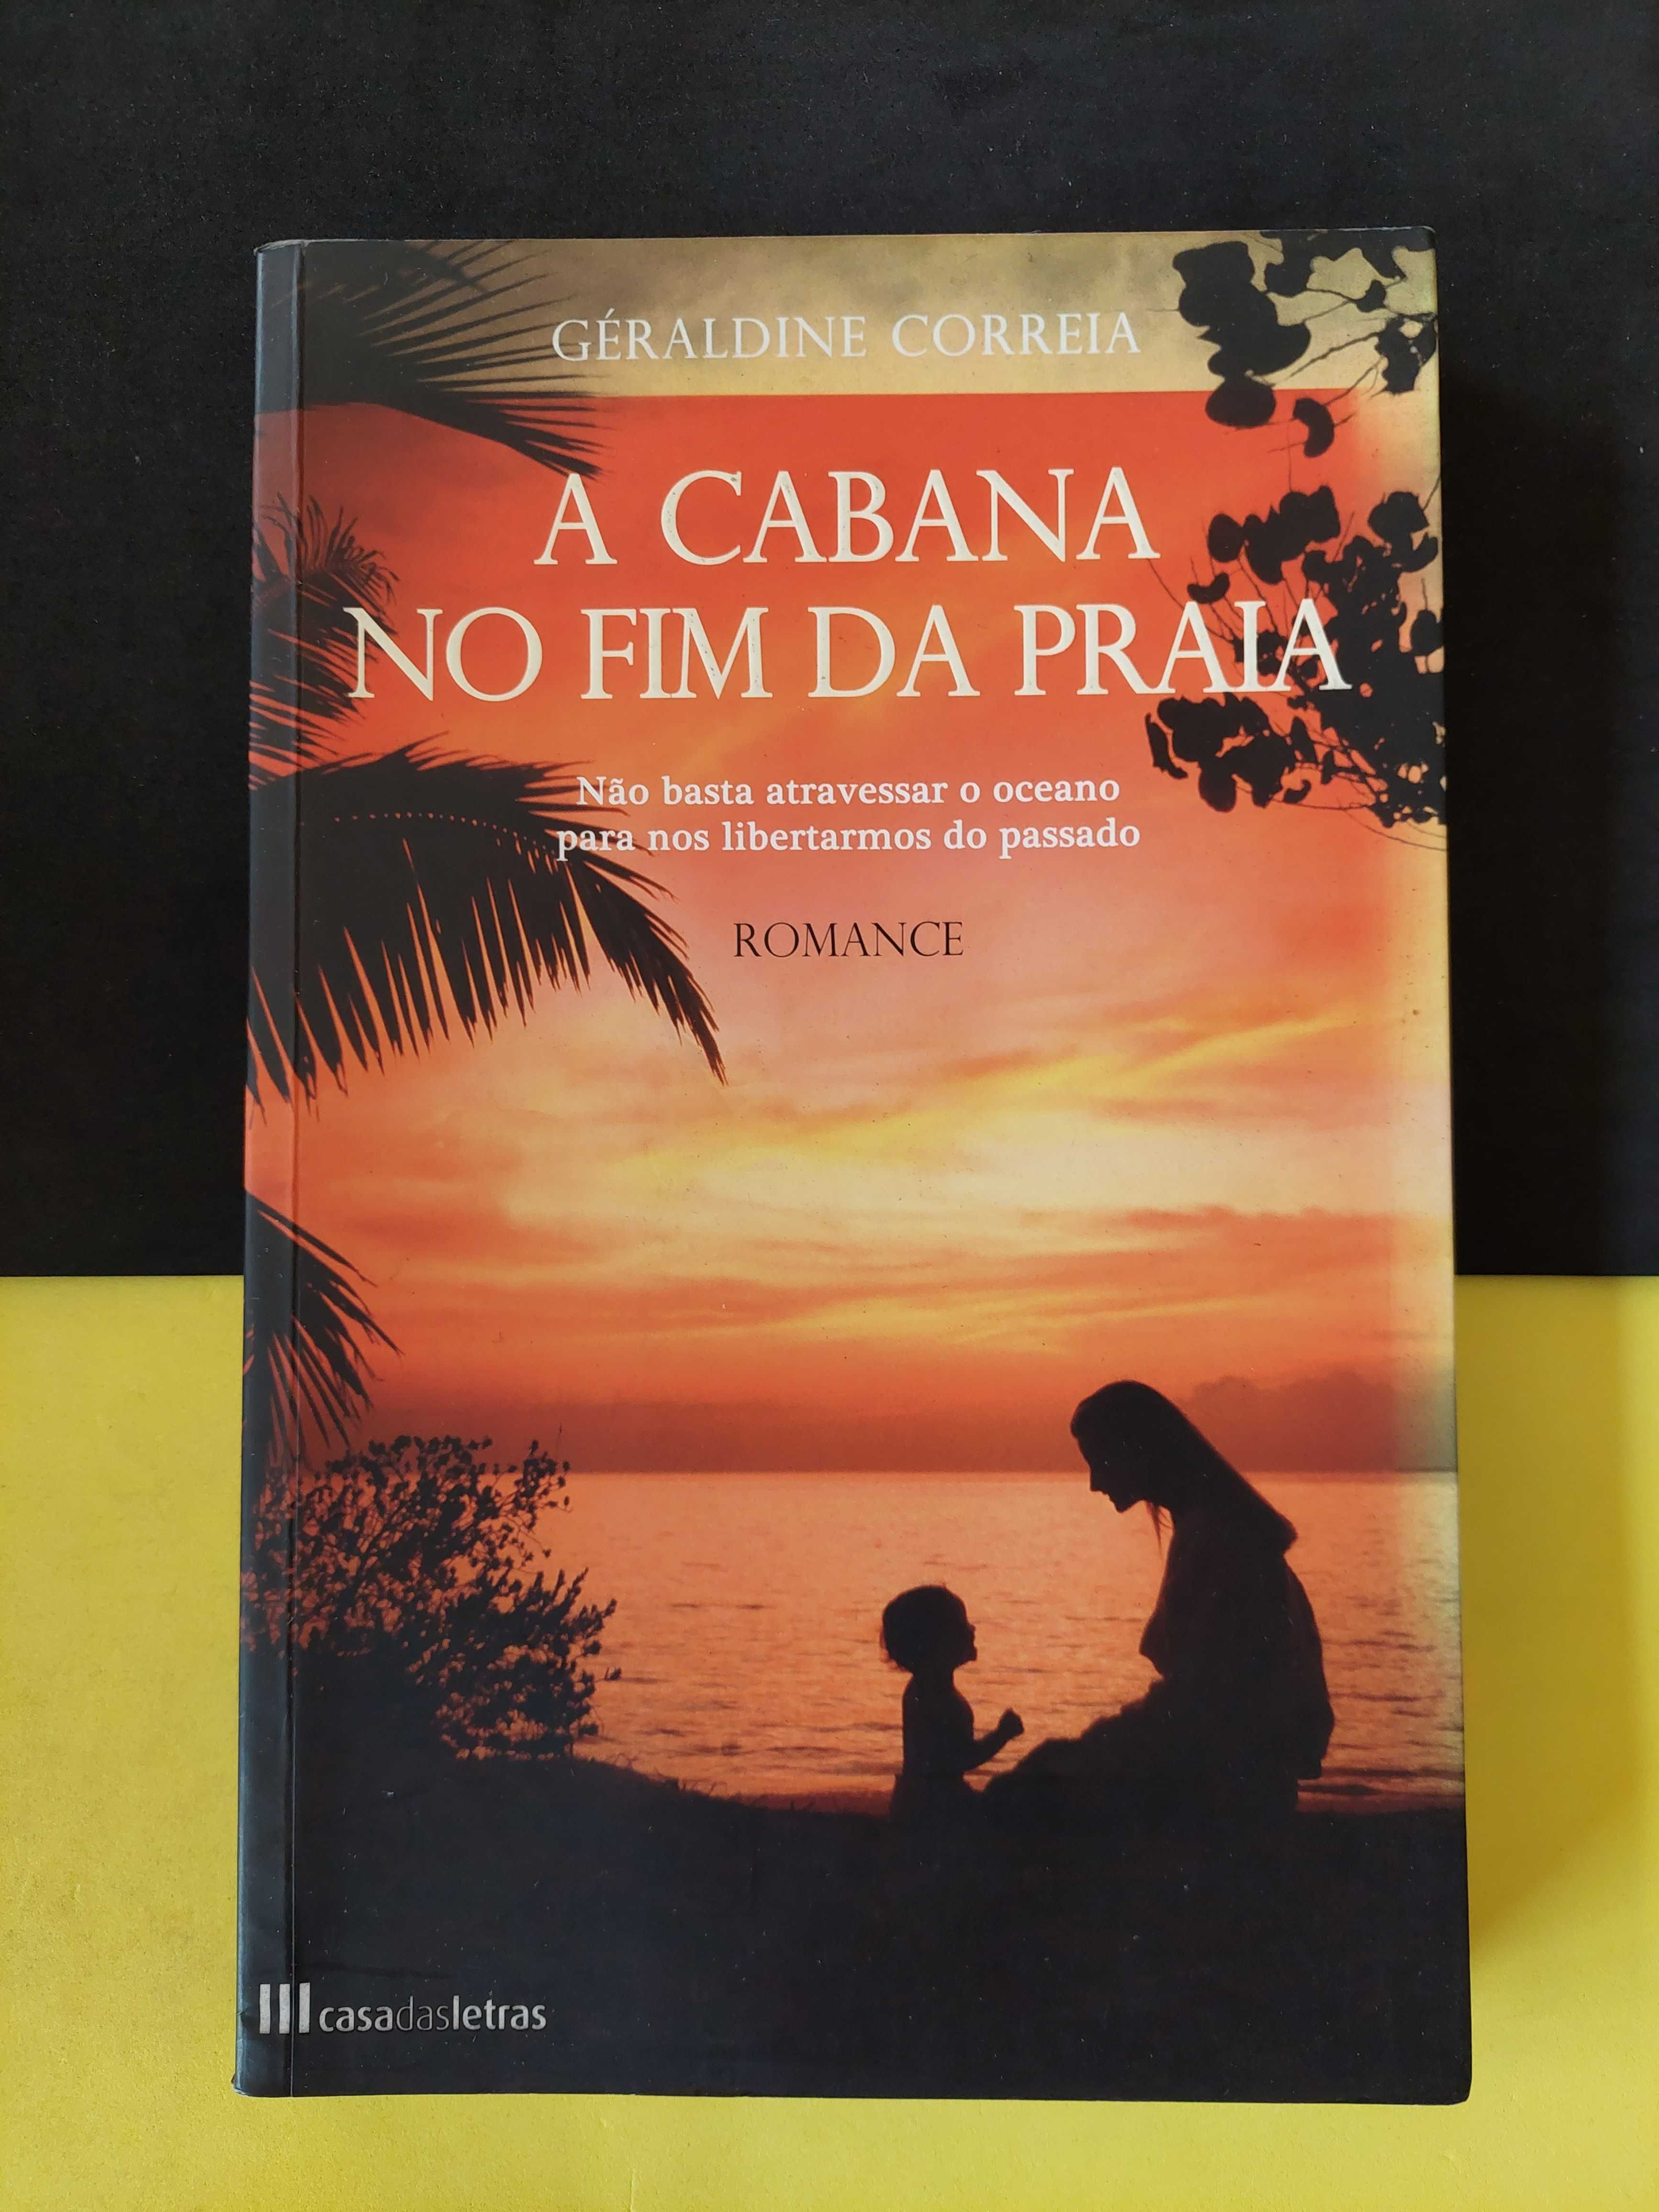 Géraldine Correia - A Cabana No Fim da Praia